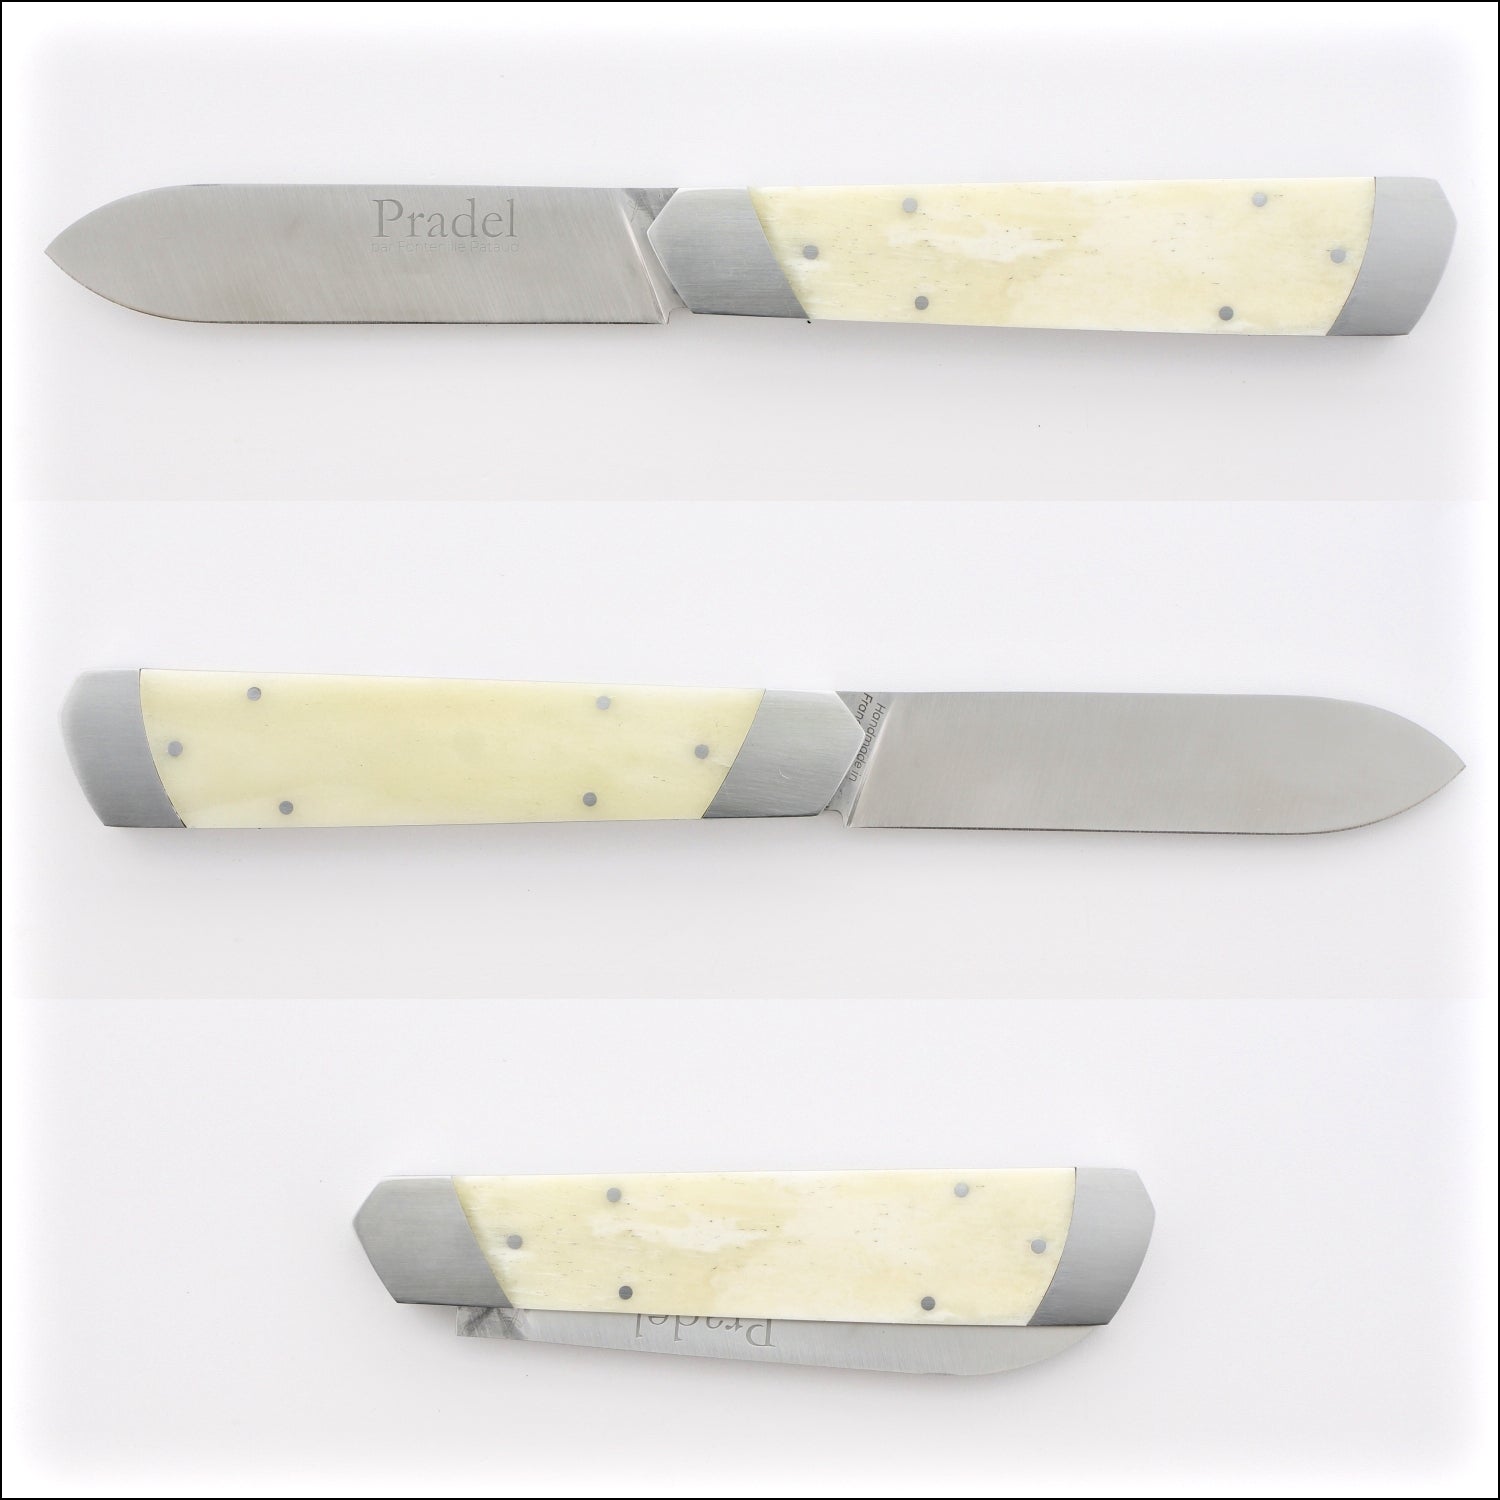 Pradel Folding Knife Cattle Bone Handle & Lock-Back by Fontenille Pataud